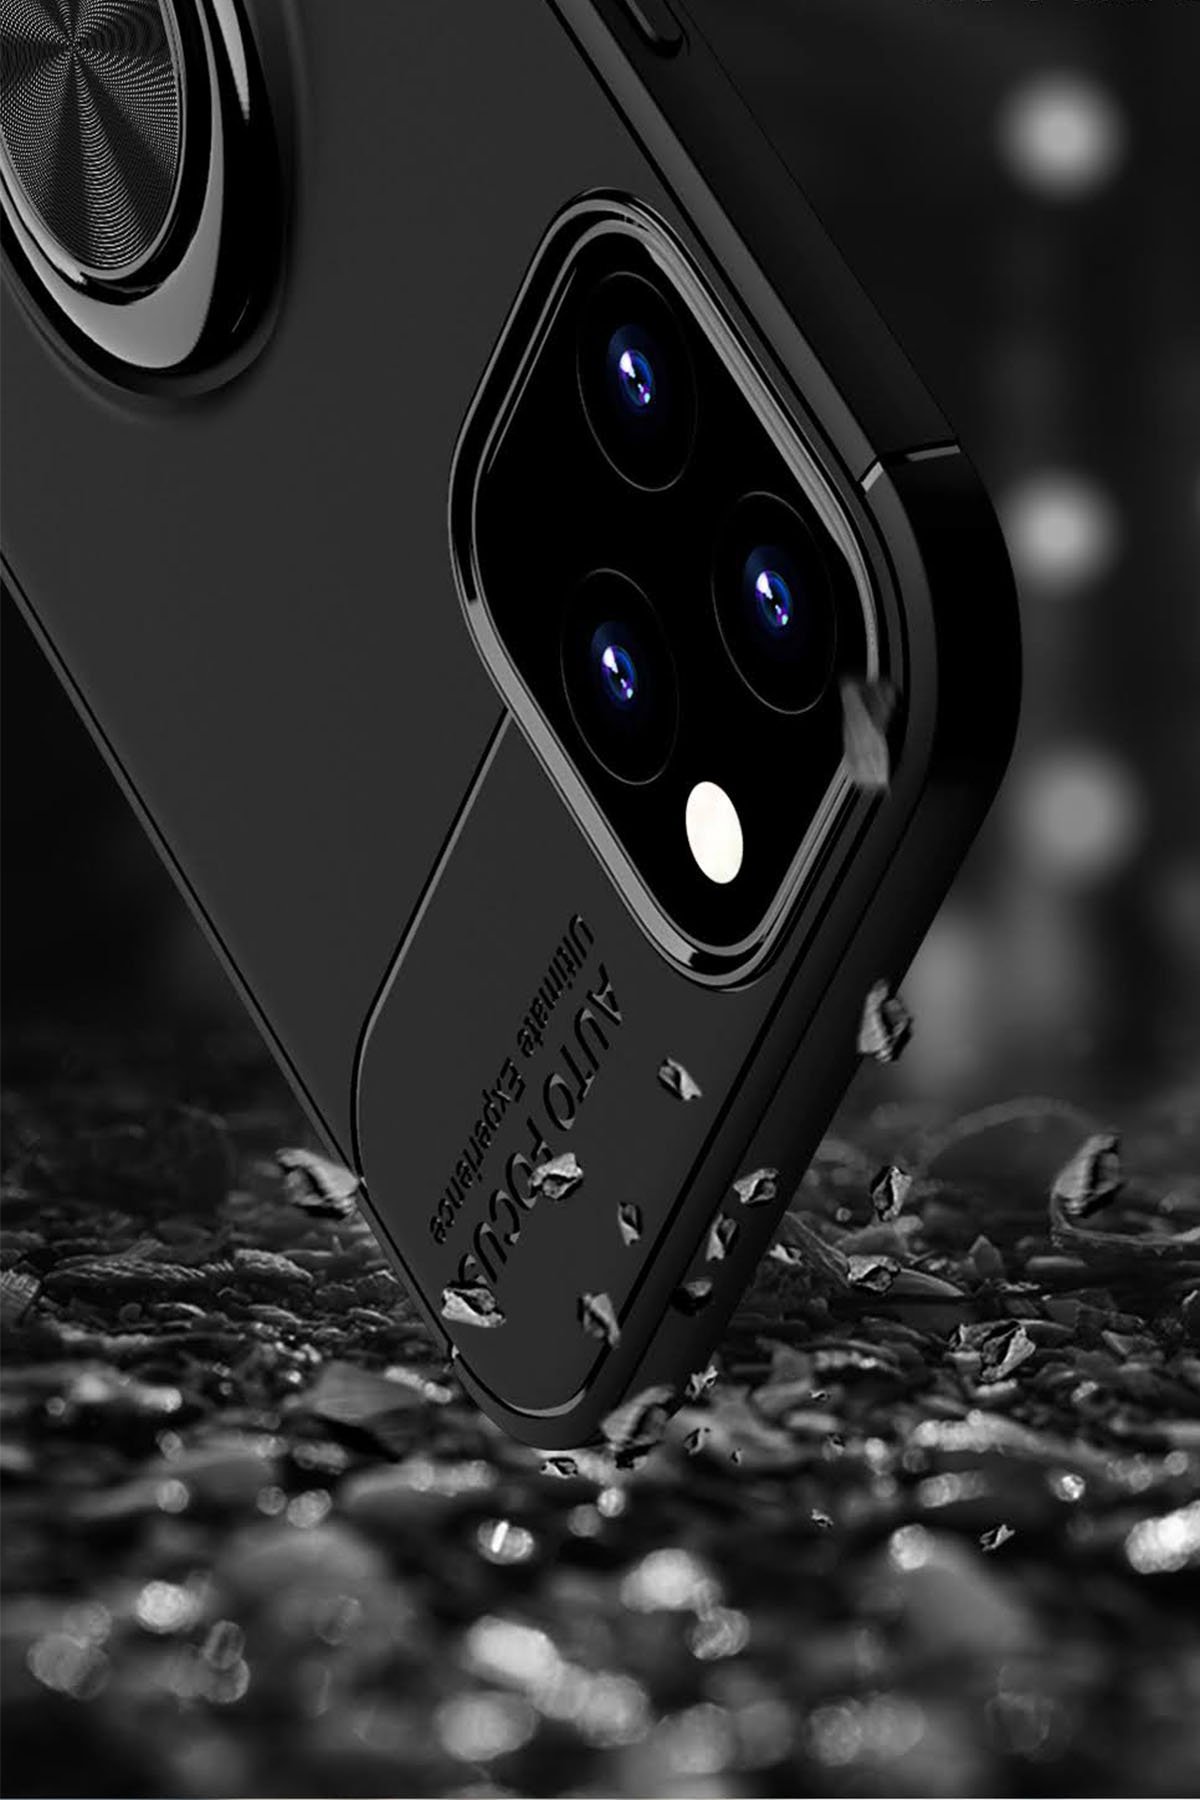 Newface iPhone 12 Pro Kılıf Viktor Yüzüklü Silikon - Siyah